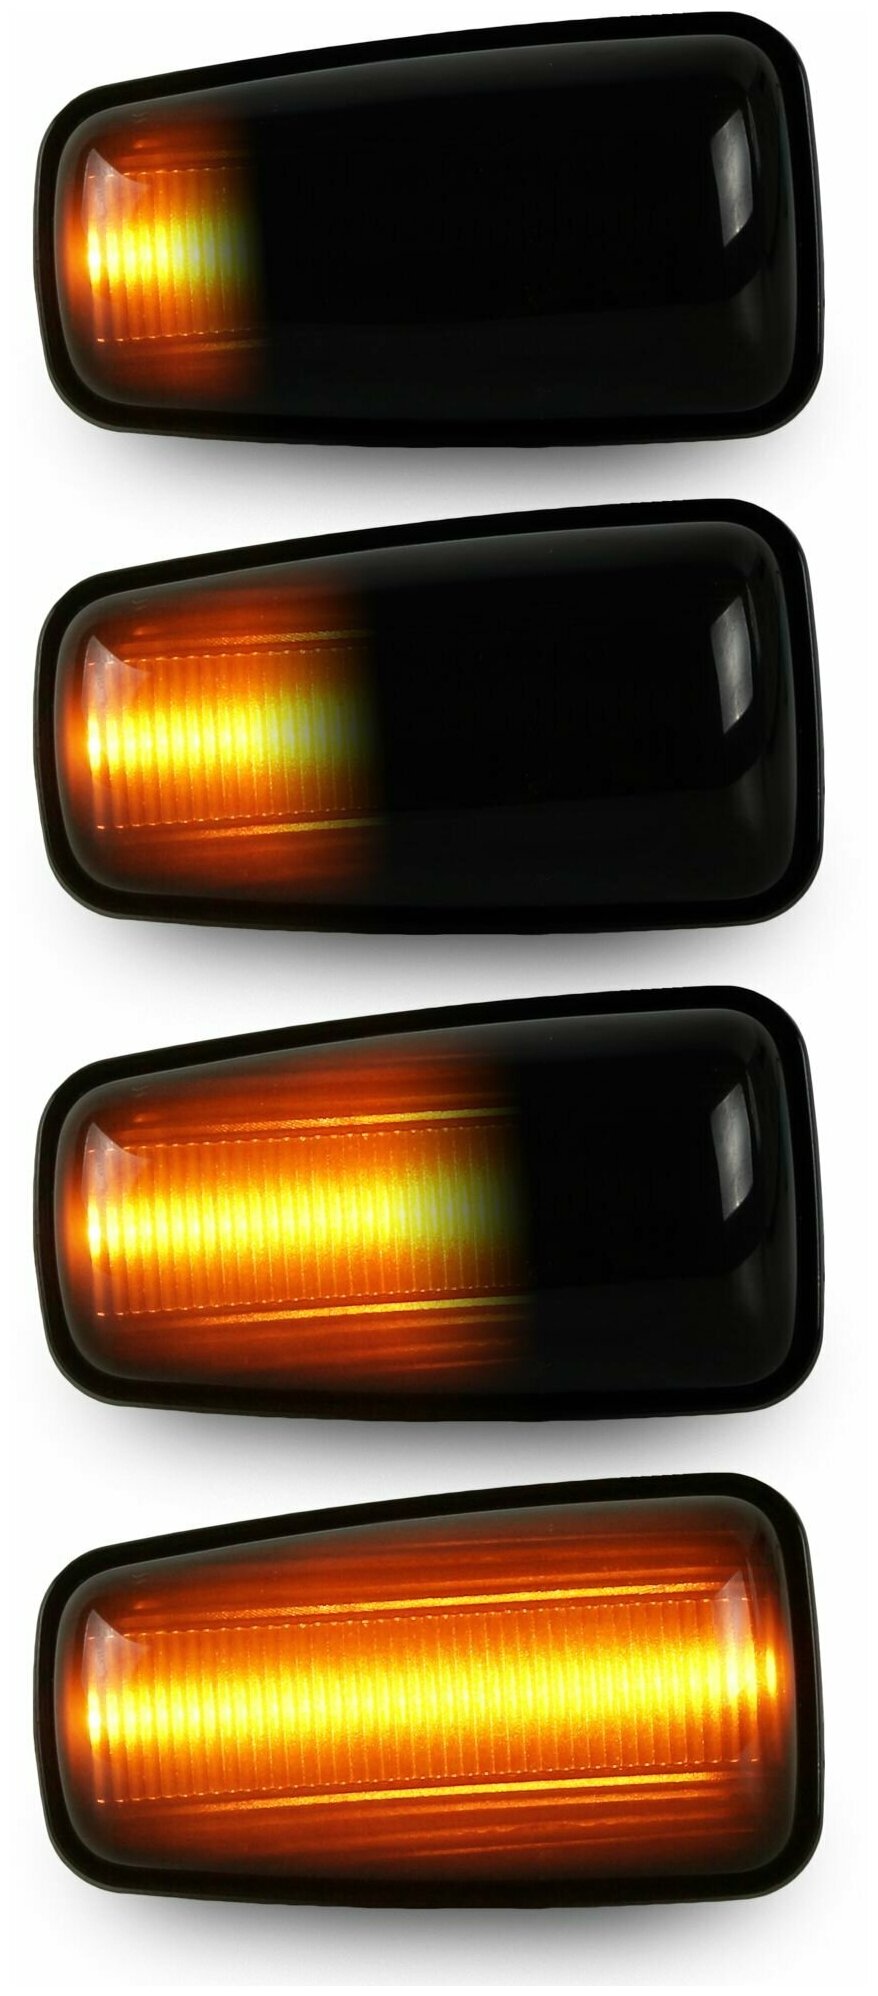 Повторители поворота LED для Peugeot Citroen динамические тонированные 2шт